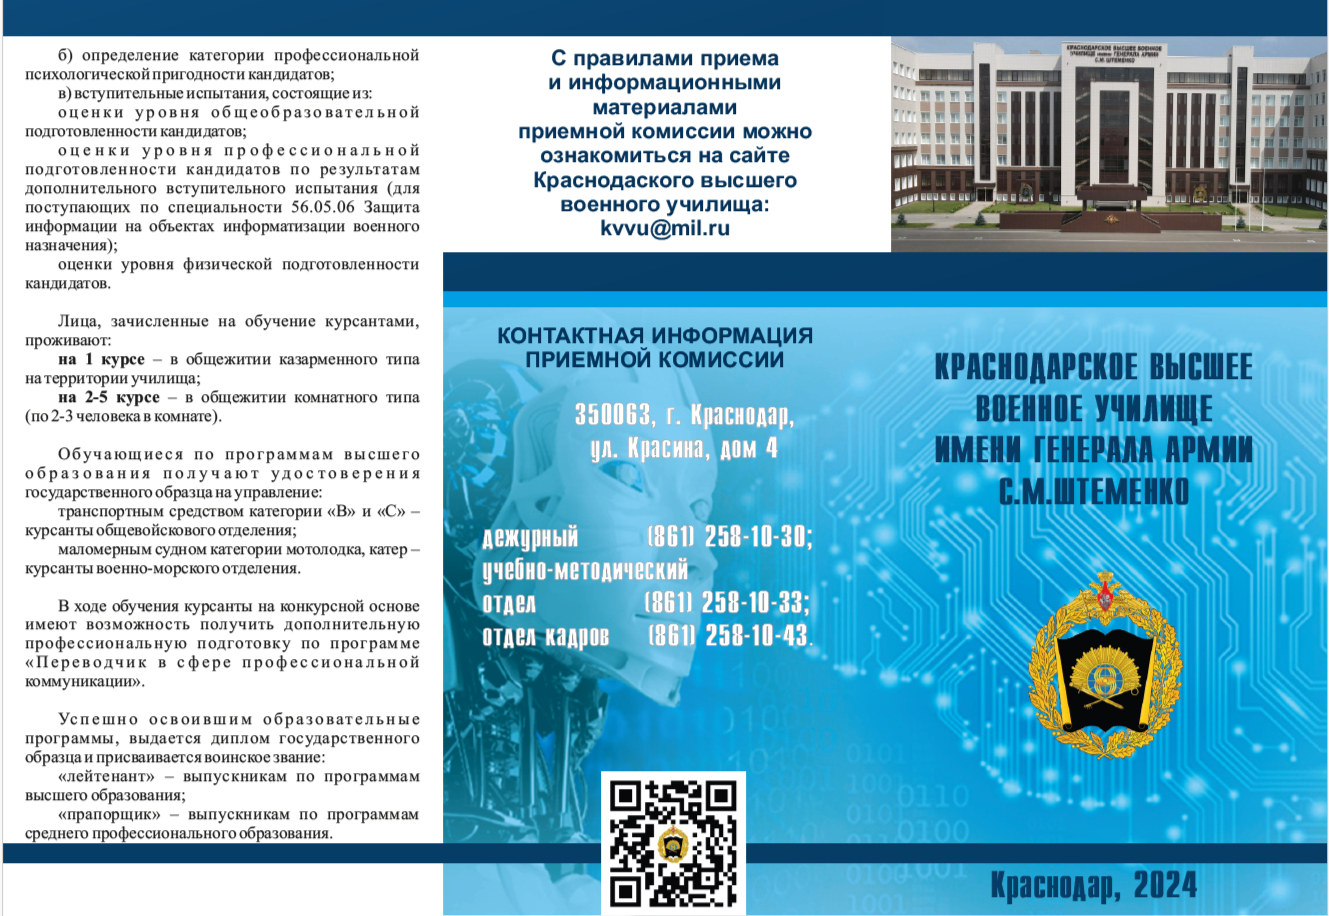 Краснодарское высшее военное училище имени генерала армии С.М. Штеменко приглашает абитуриентов.